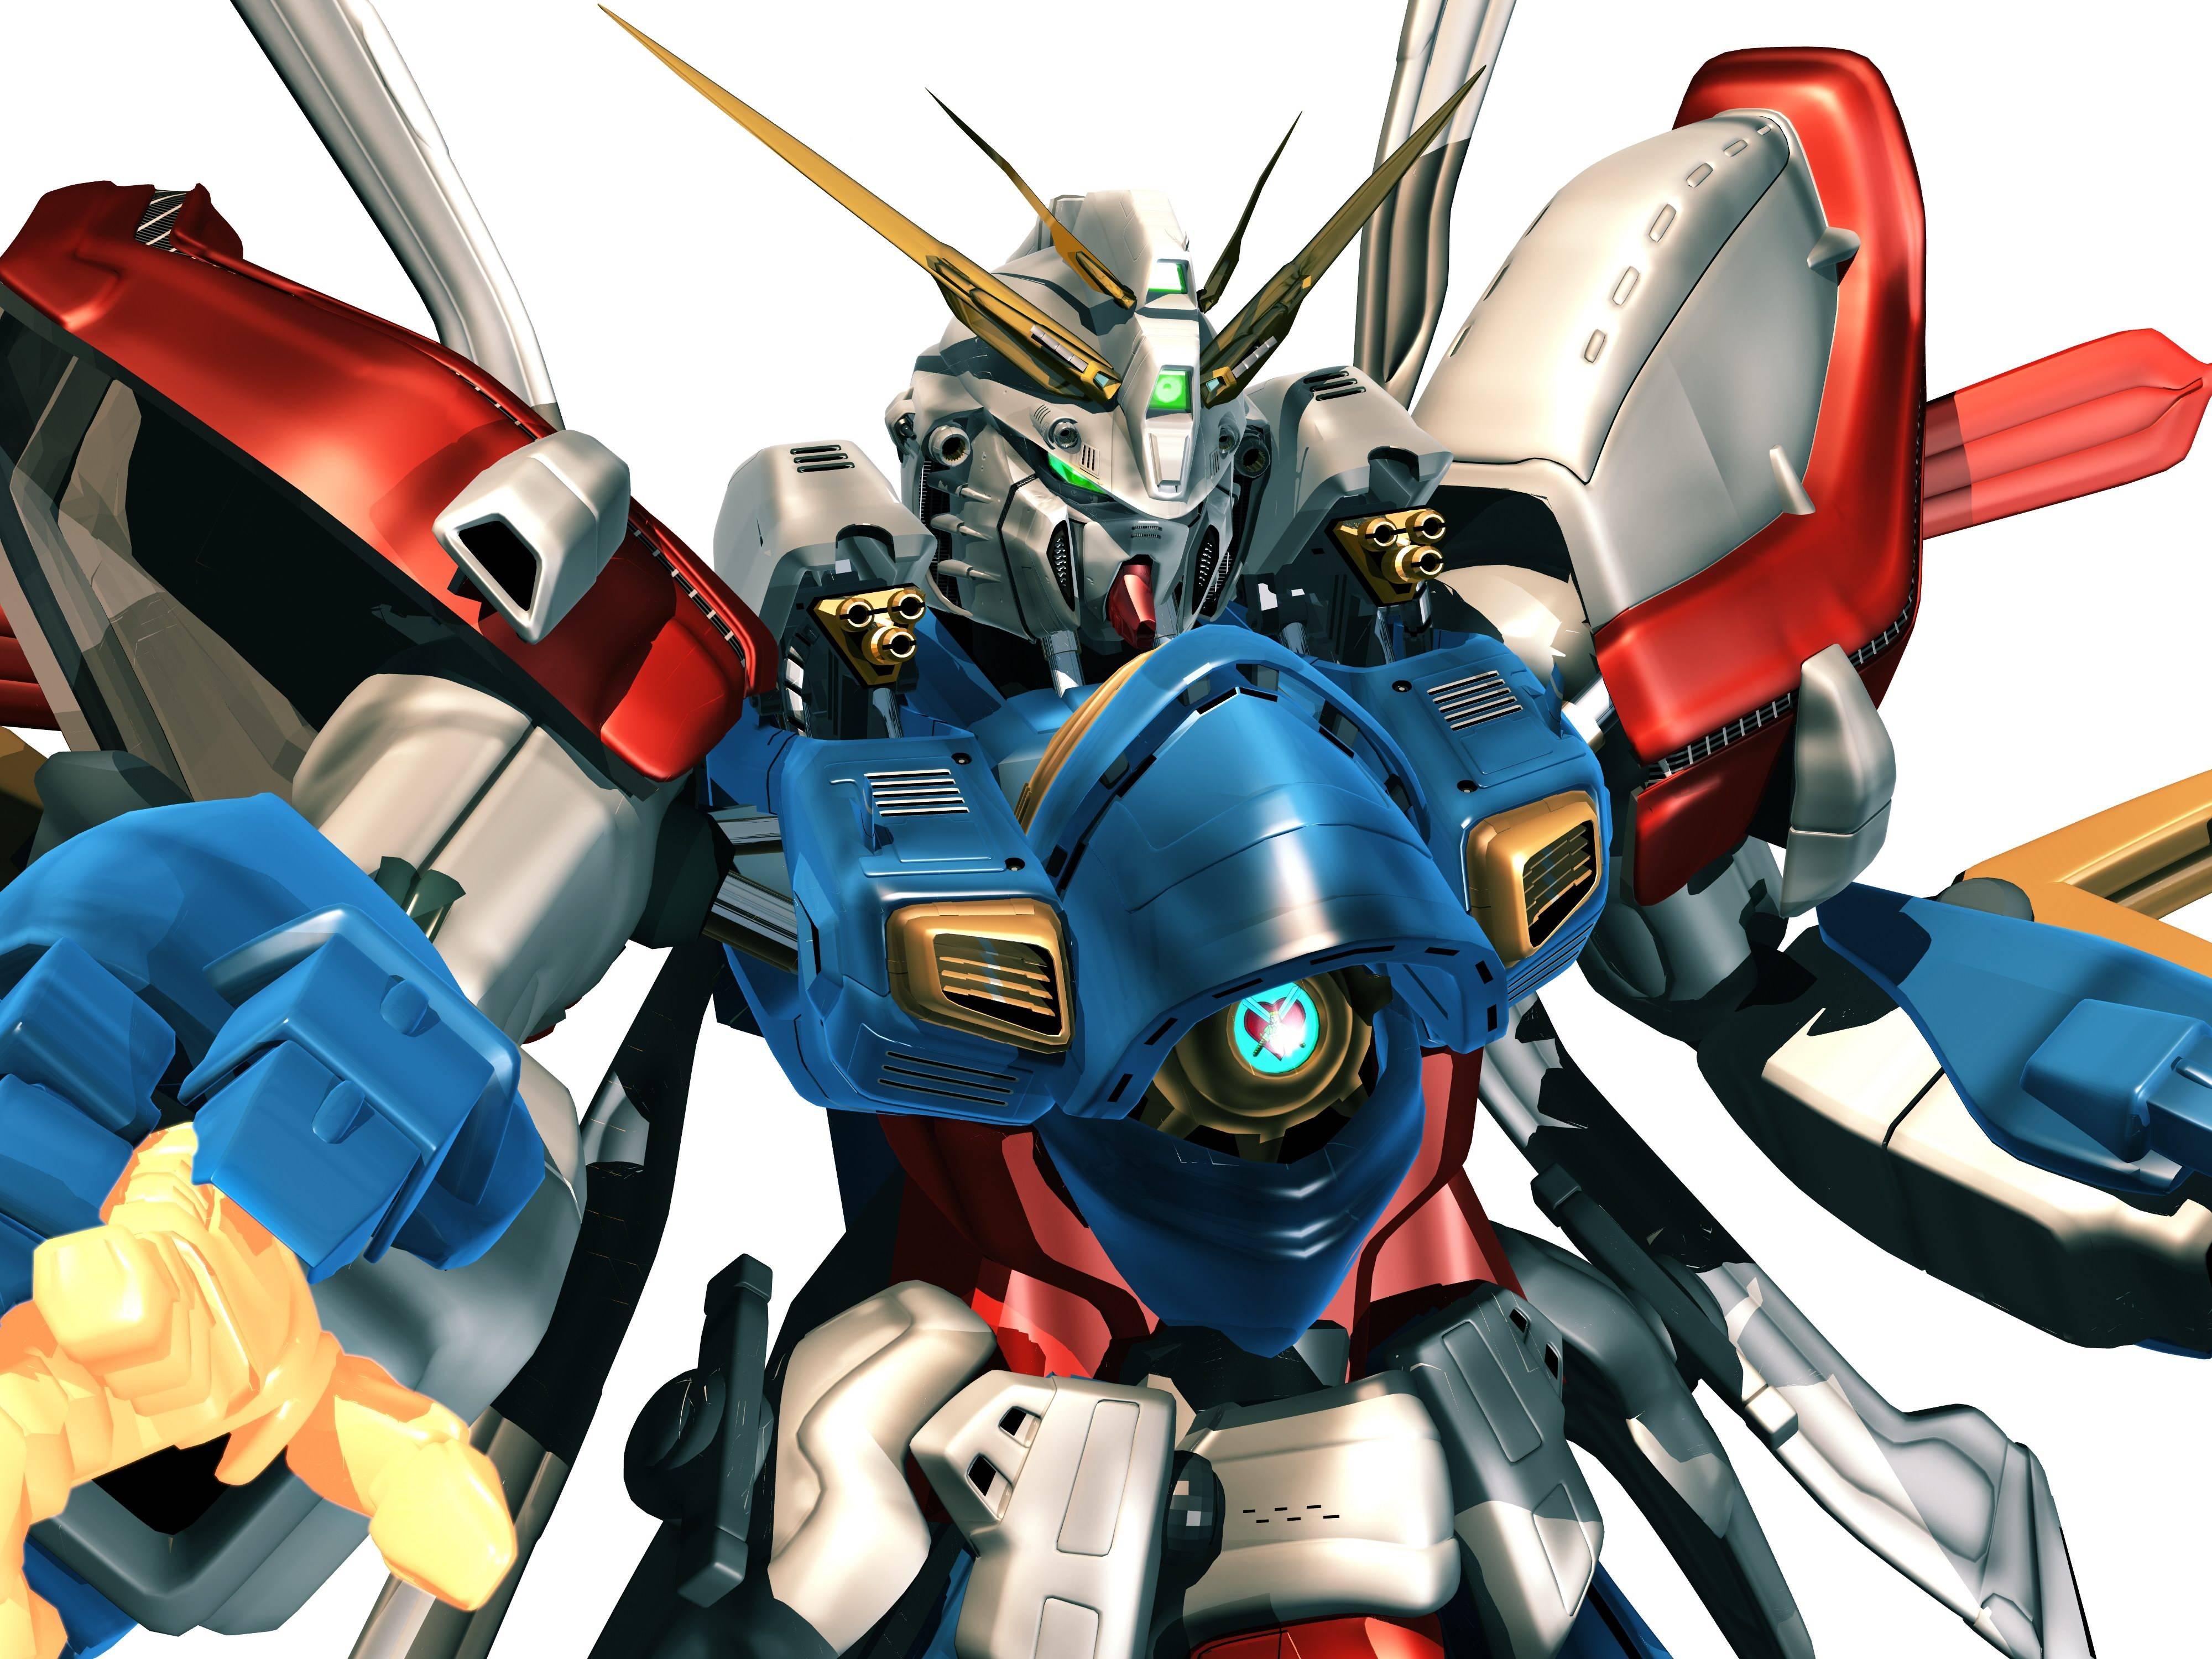 4000 x 3000 · jpeg - Gundam Wallpapers HD - Wallpaper Cave